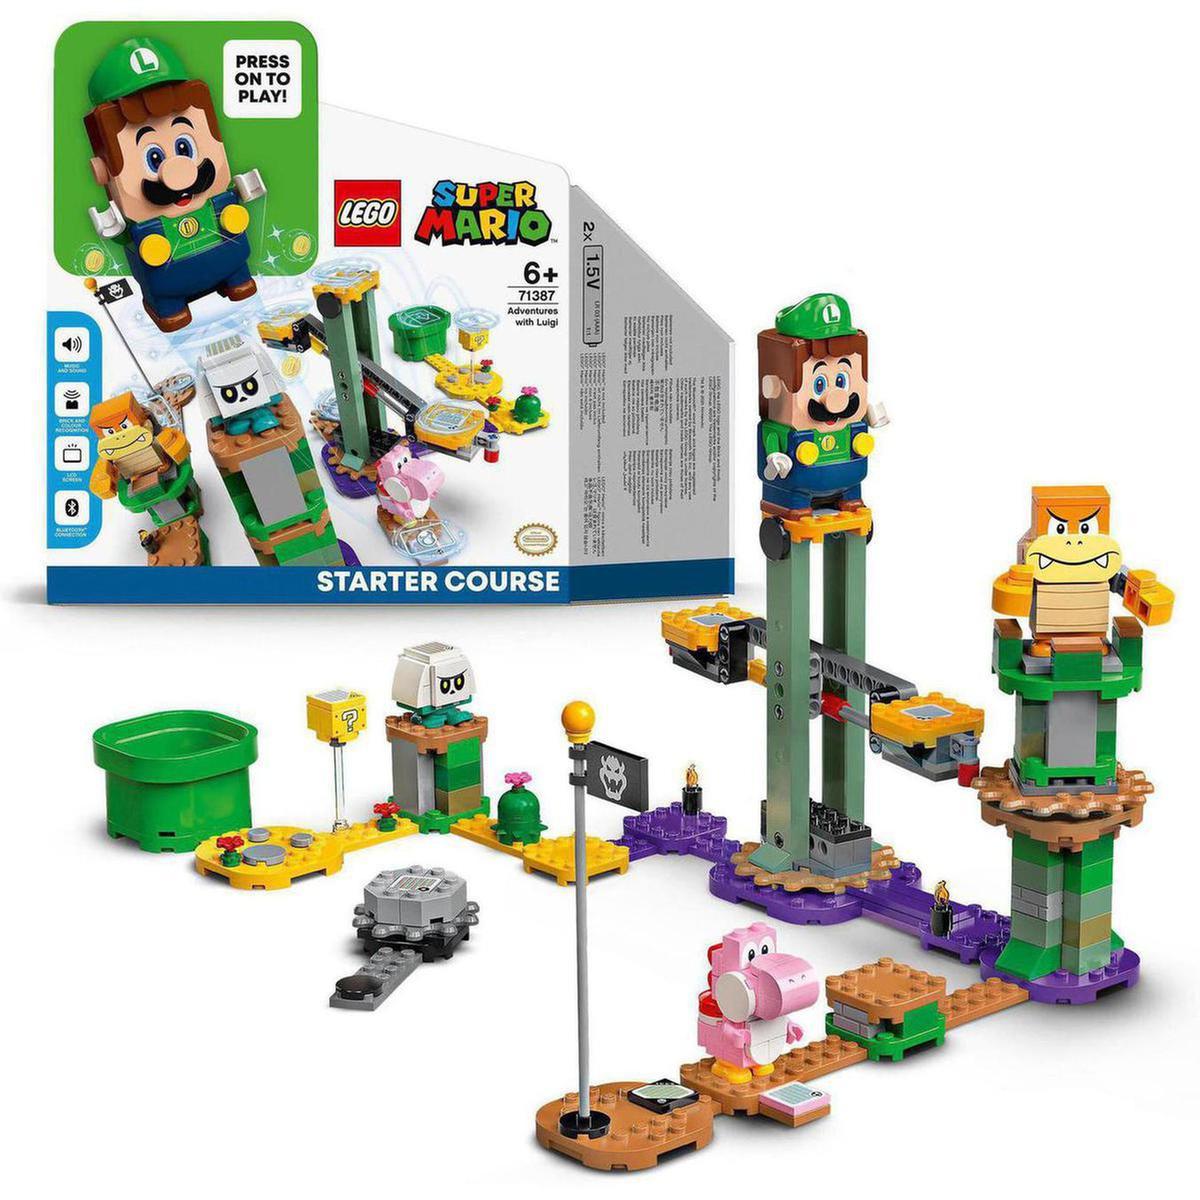 LEGO Super Mario - Pack Inicial aventuras com Luigi - 71387 | LEGO OUTRAS  LINHAS | Loja de brinquedos e videojogos Online Toysrus